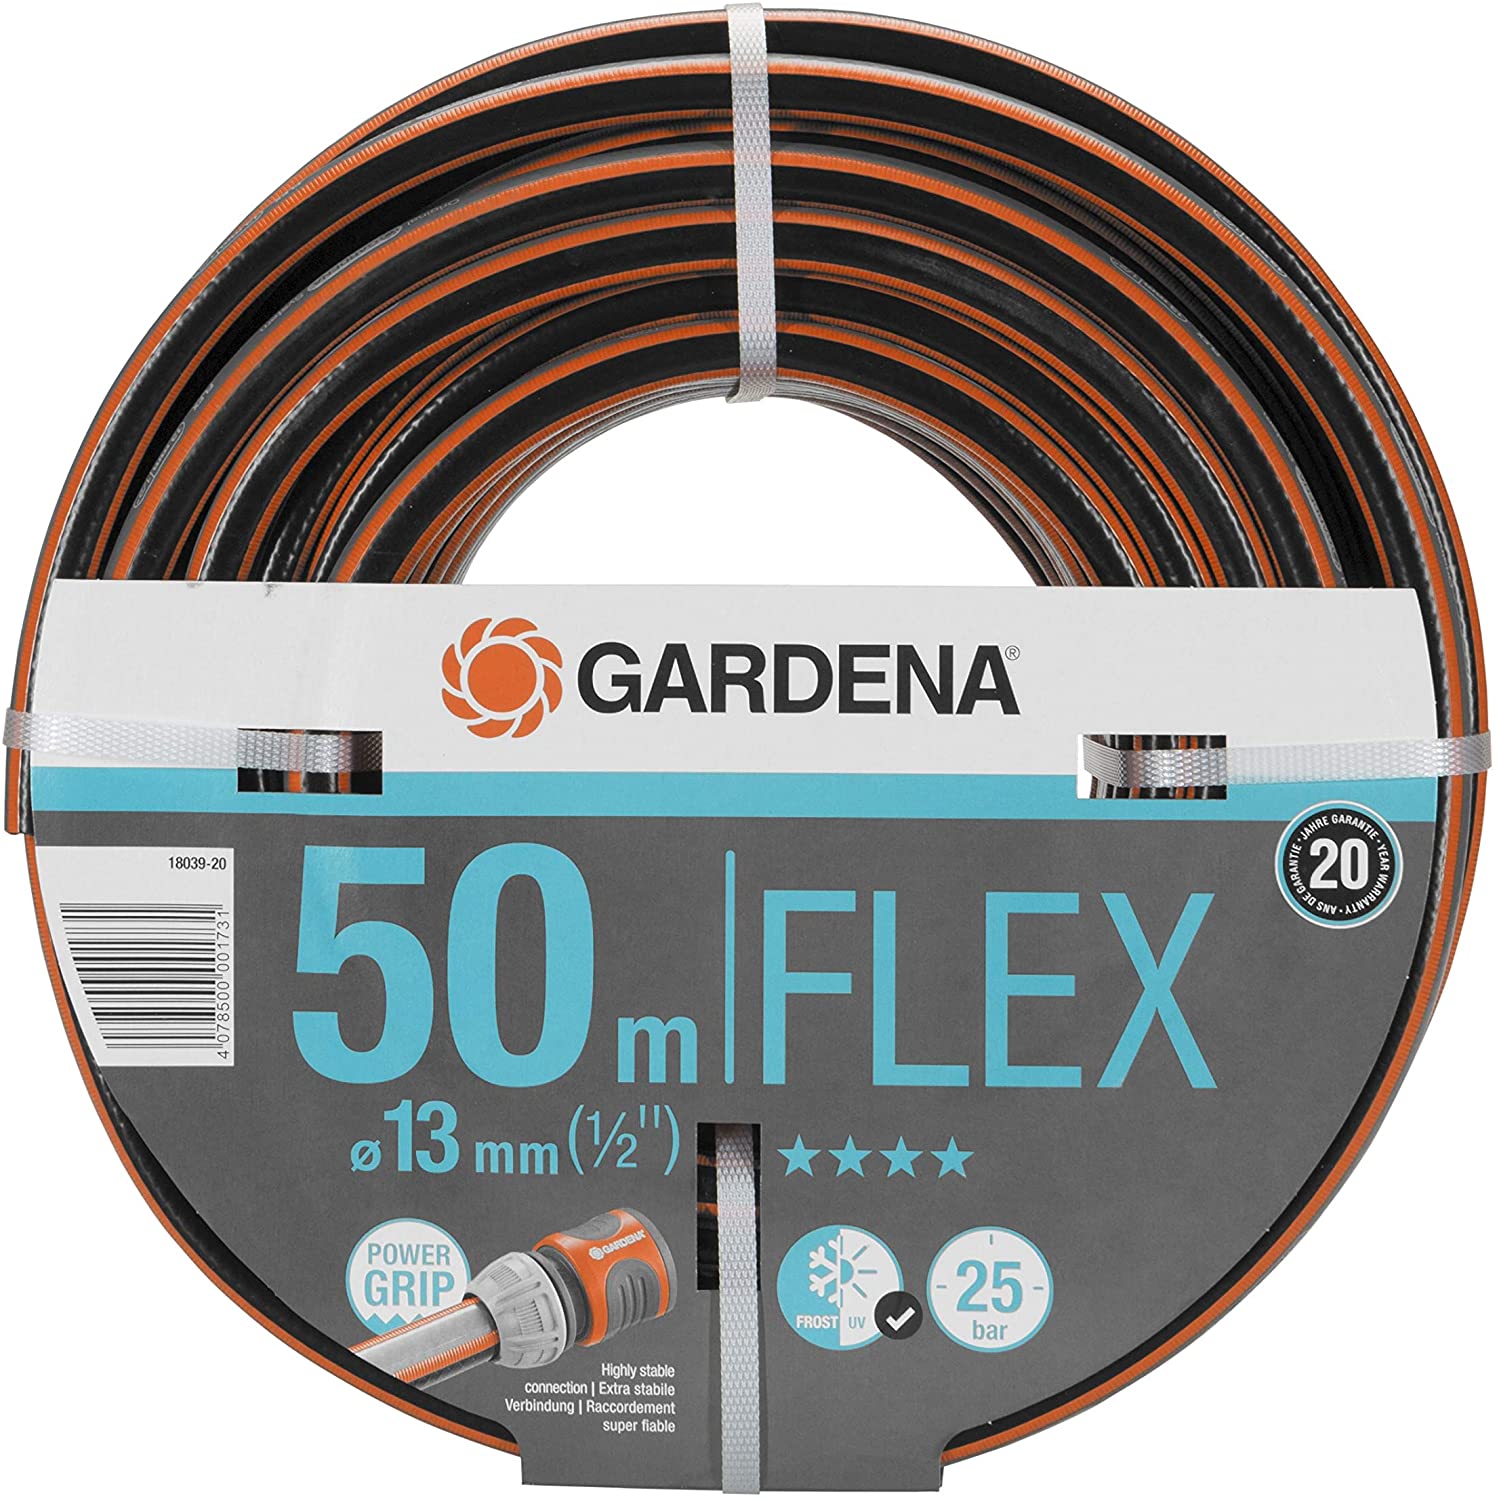 Gardena Comfort FLEX Hose 50m